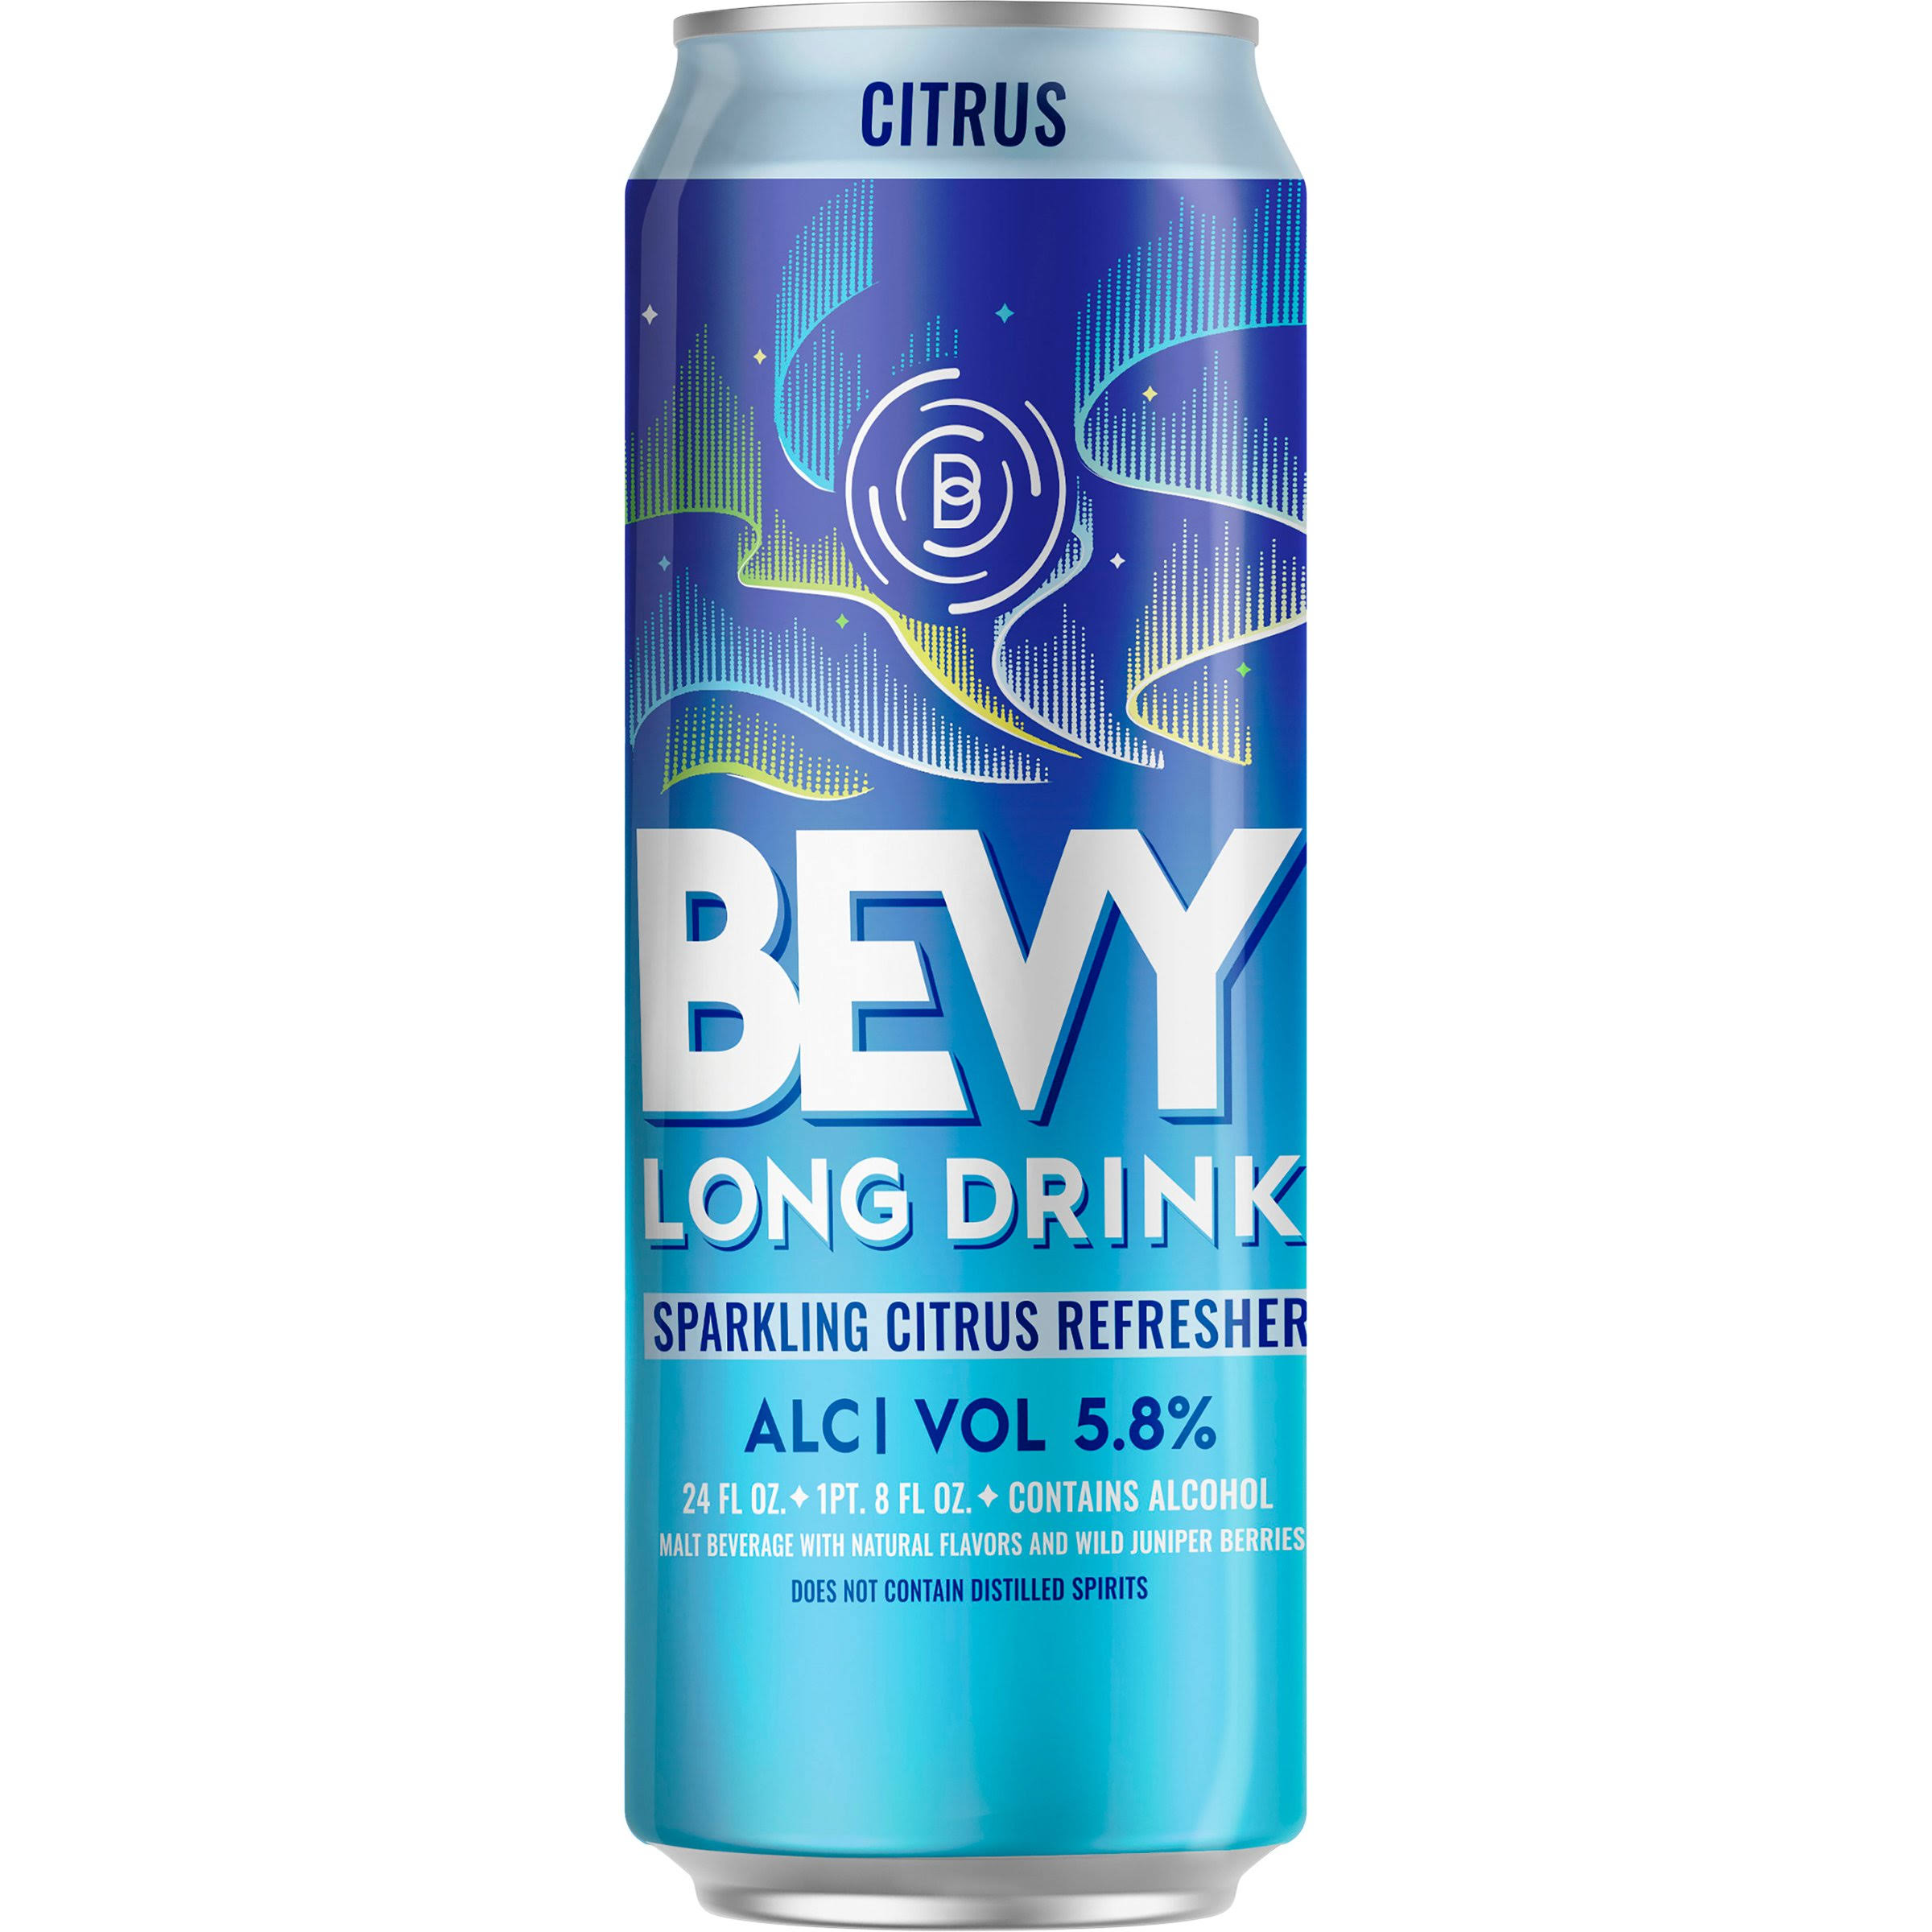 Bevy Long Drink Sparkling Refresher, Citrus - 24 fl oz